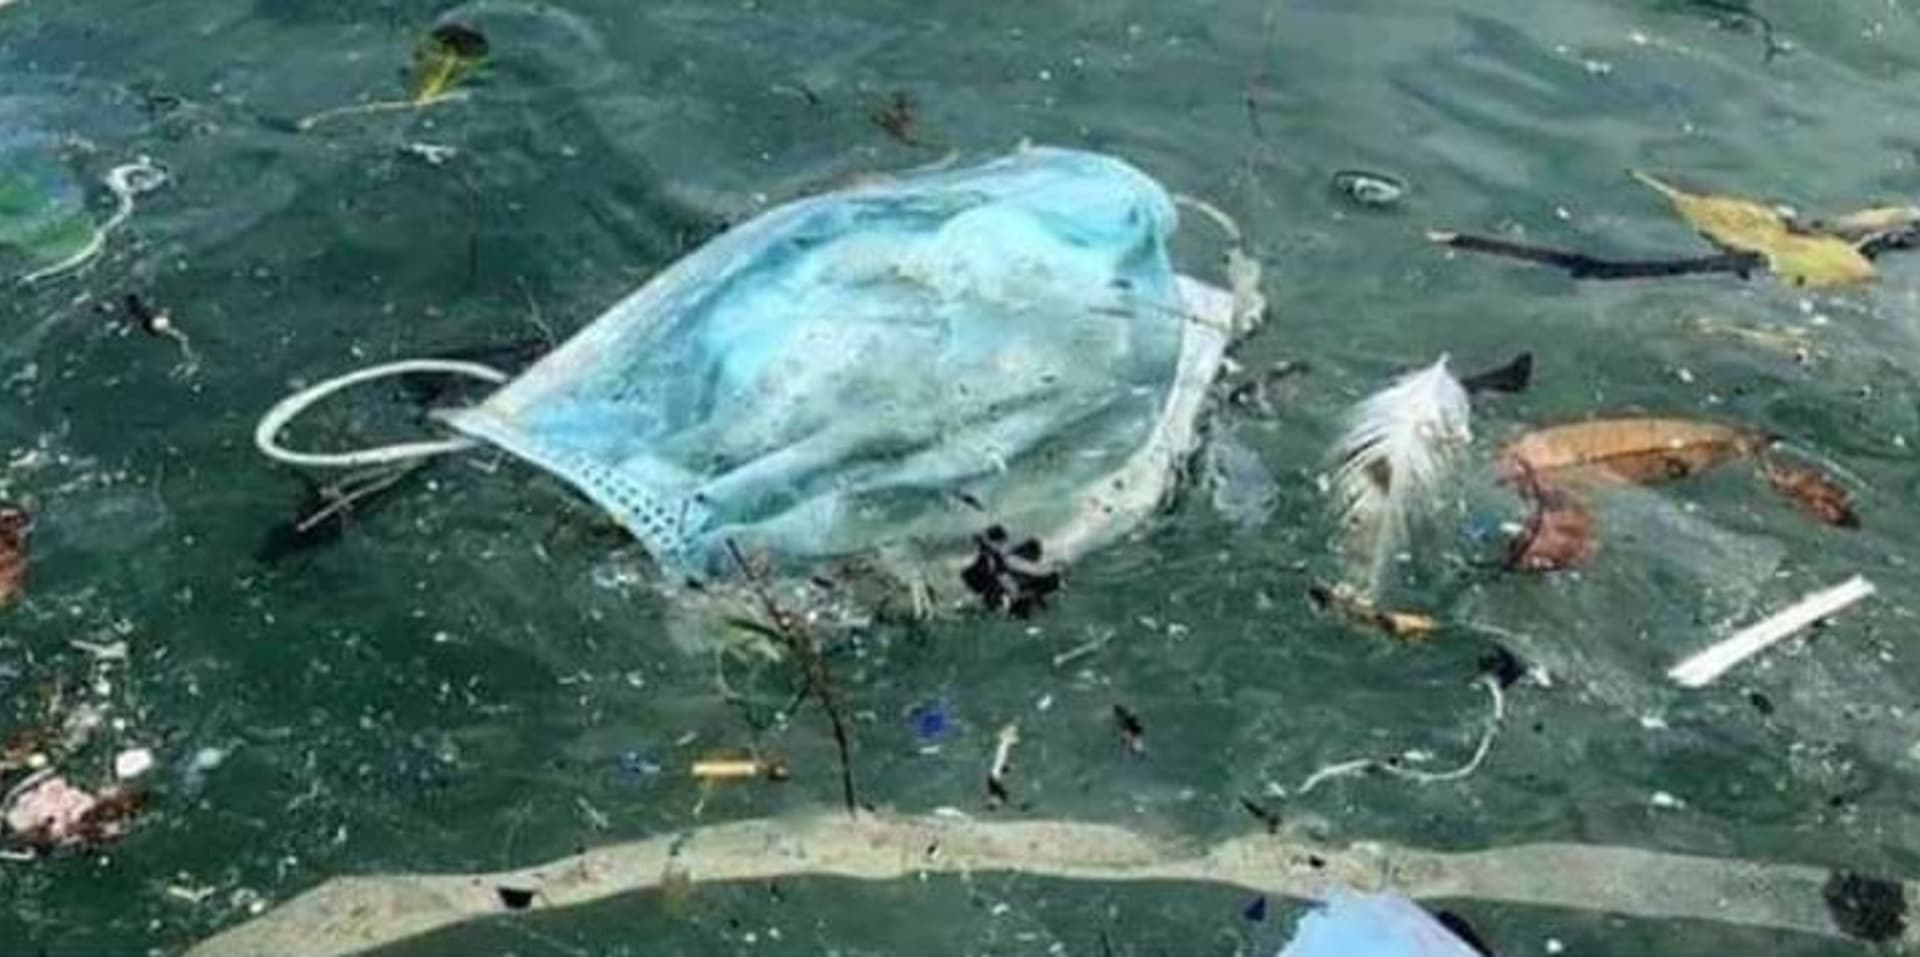 Použitá rouška plave jako nebezpečný odpad ve vodě